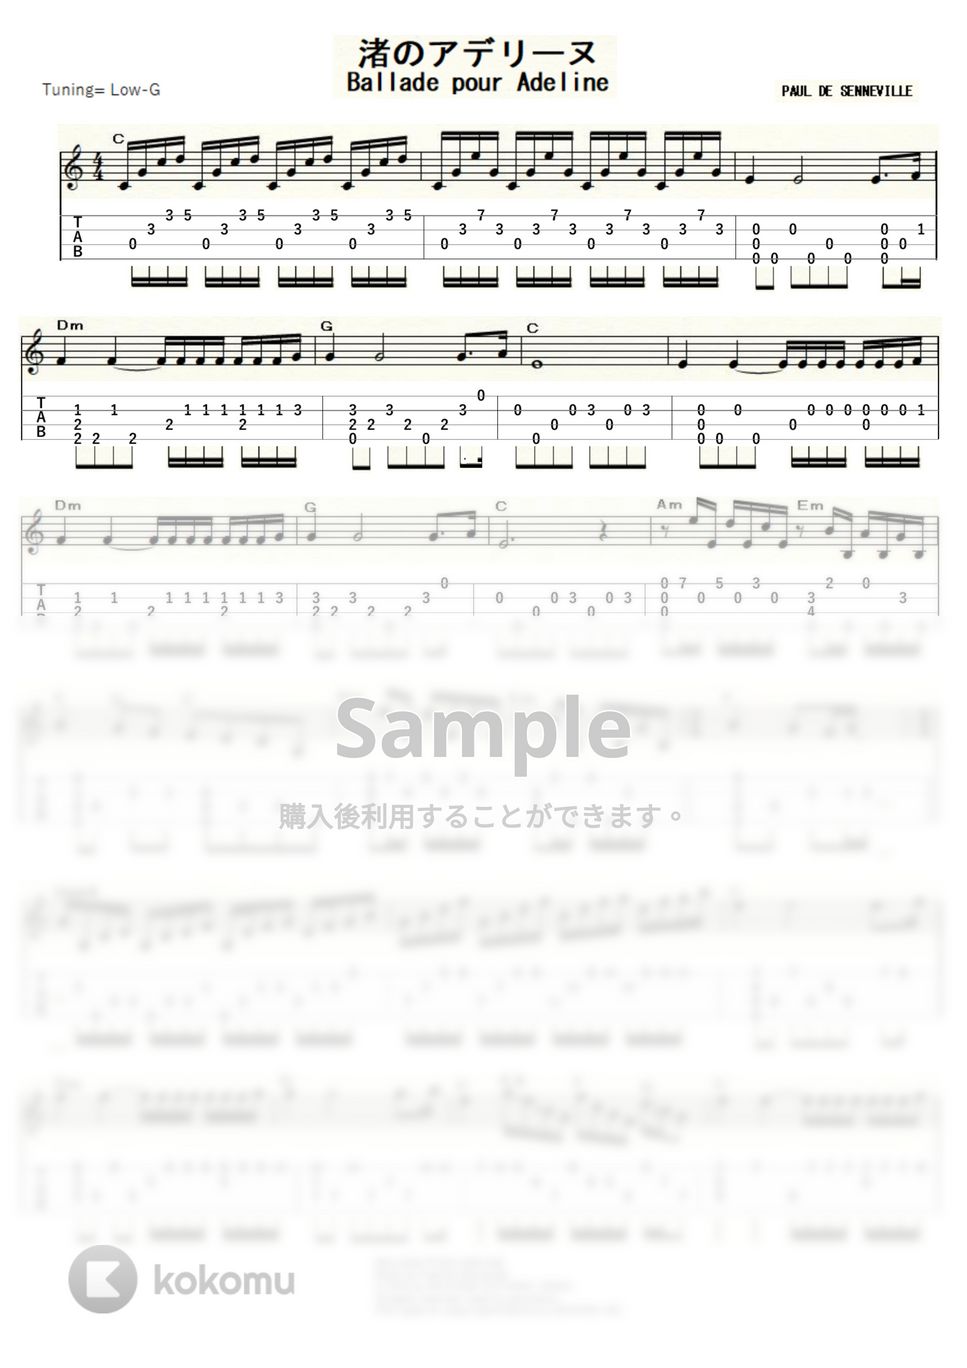 リチャード・クレイダーマン - 渚のアデリーヌ (ｳｸﾚﾚｿﾛ / Low-G / 上級) by ukulelepapa